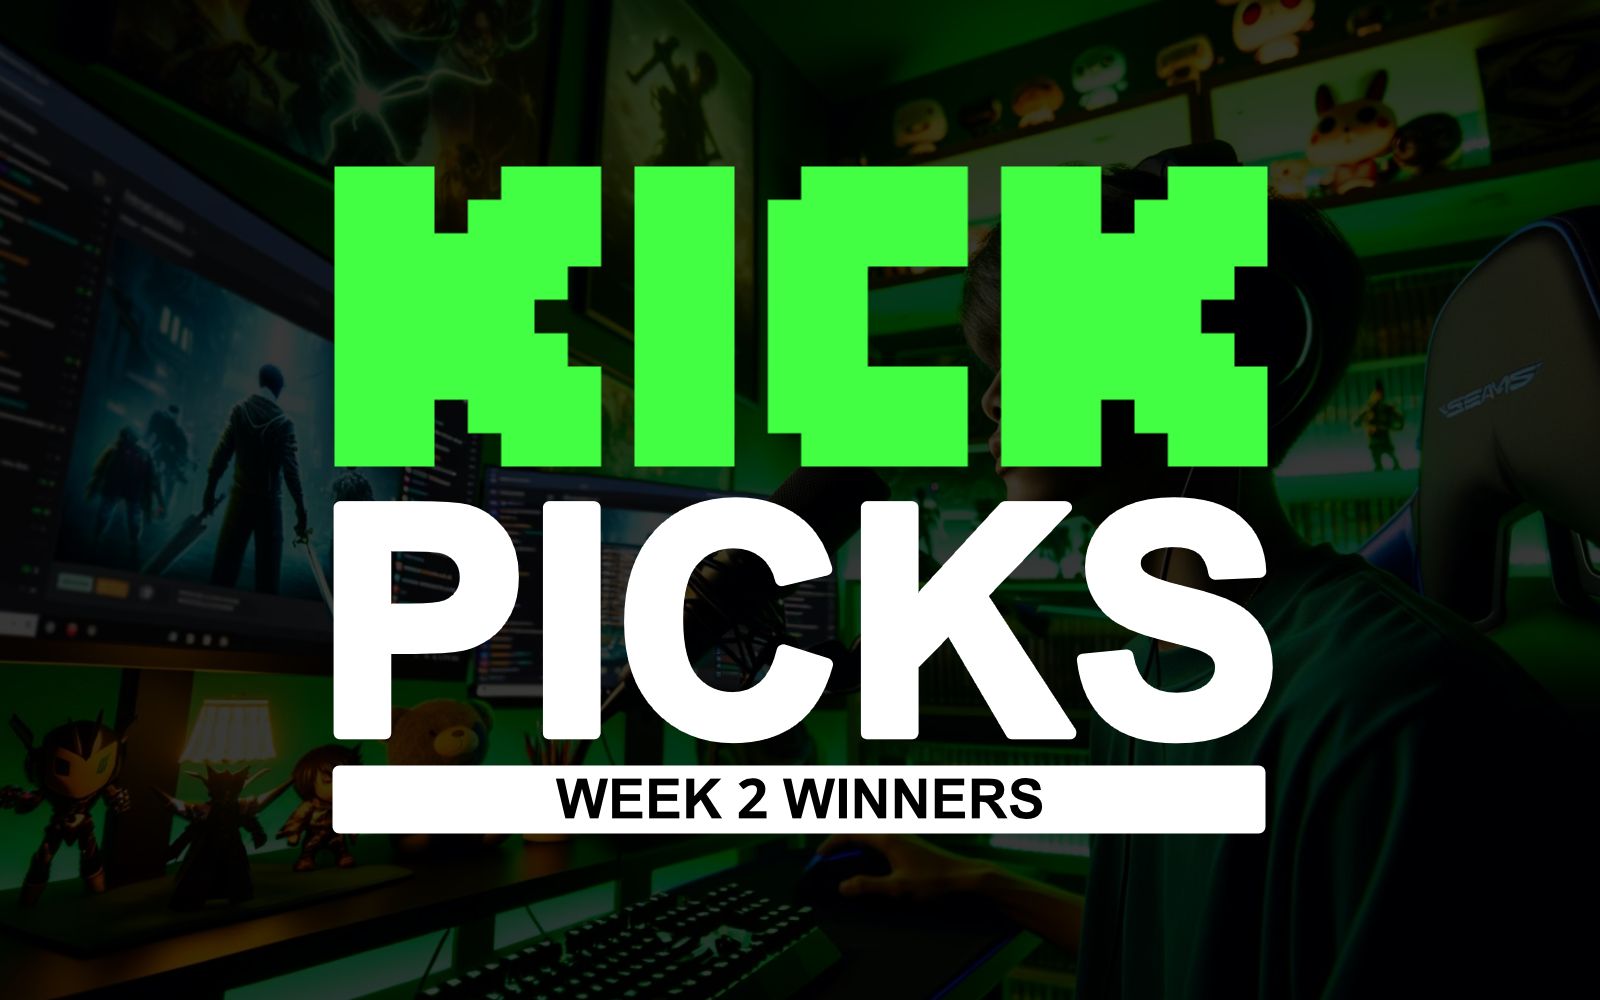 Kick Picks Week 2 Winners Header Image